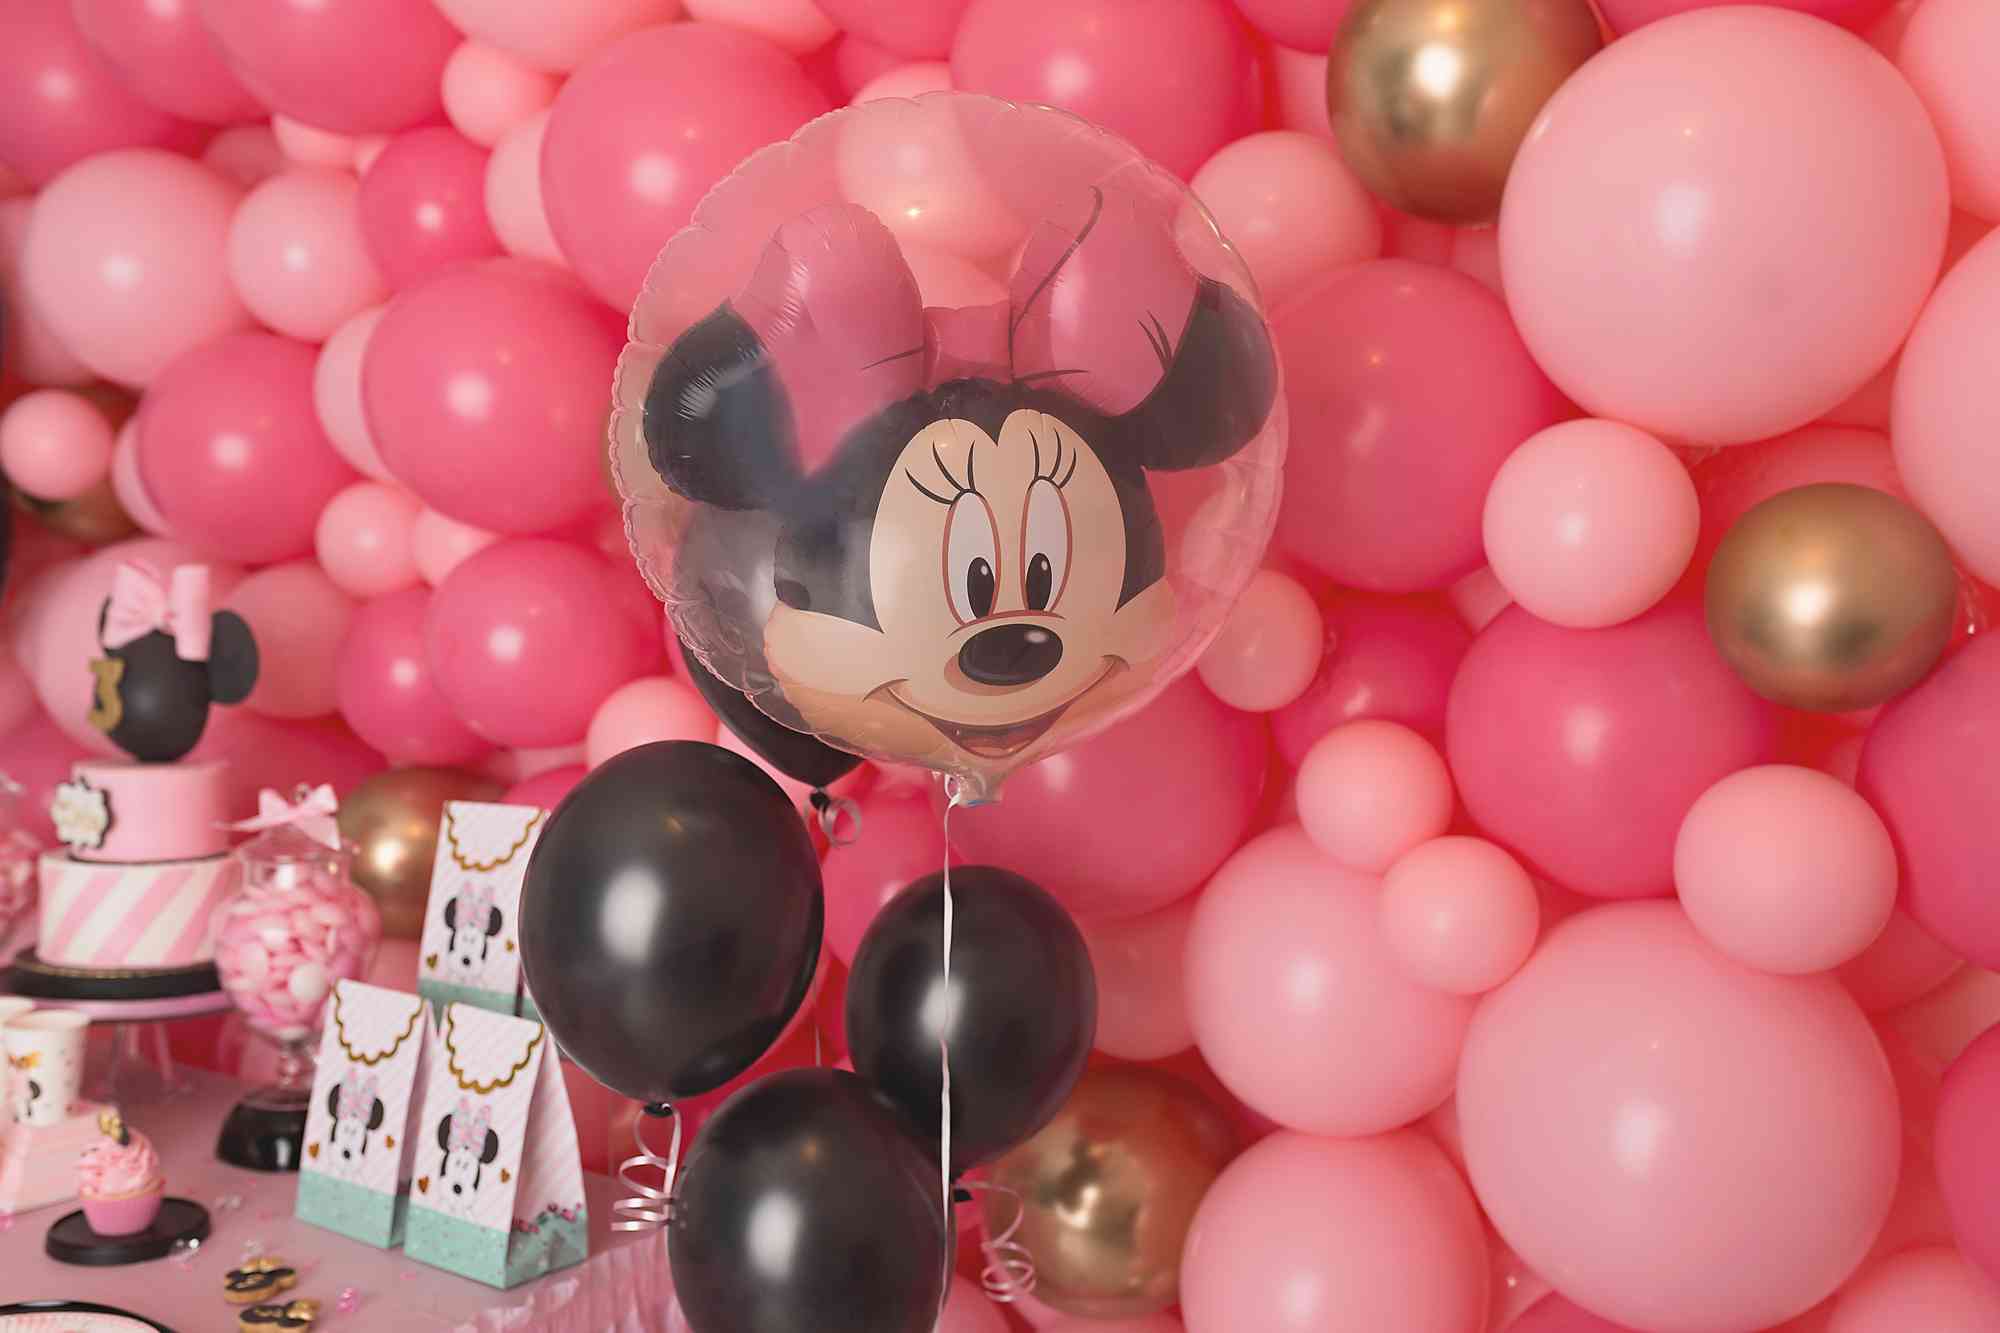 Anniversaires Minnie Fête Décoration, Minnie Ballon Décorations  Anniversaire 3 Ans Décorations de Fête D'anniversaire sur Thème de Minnie  Fournitures